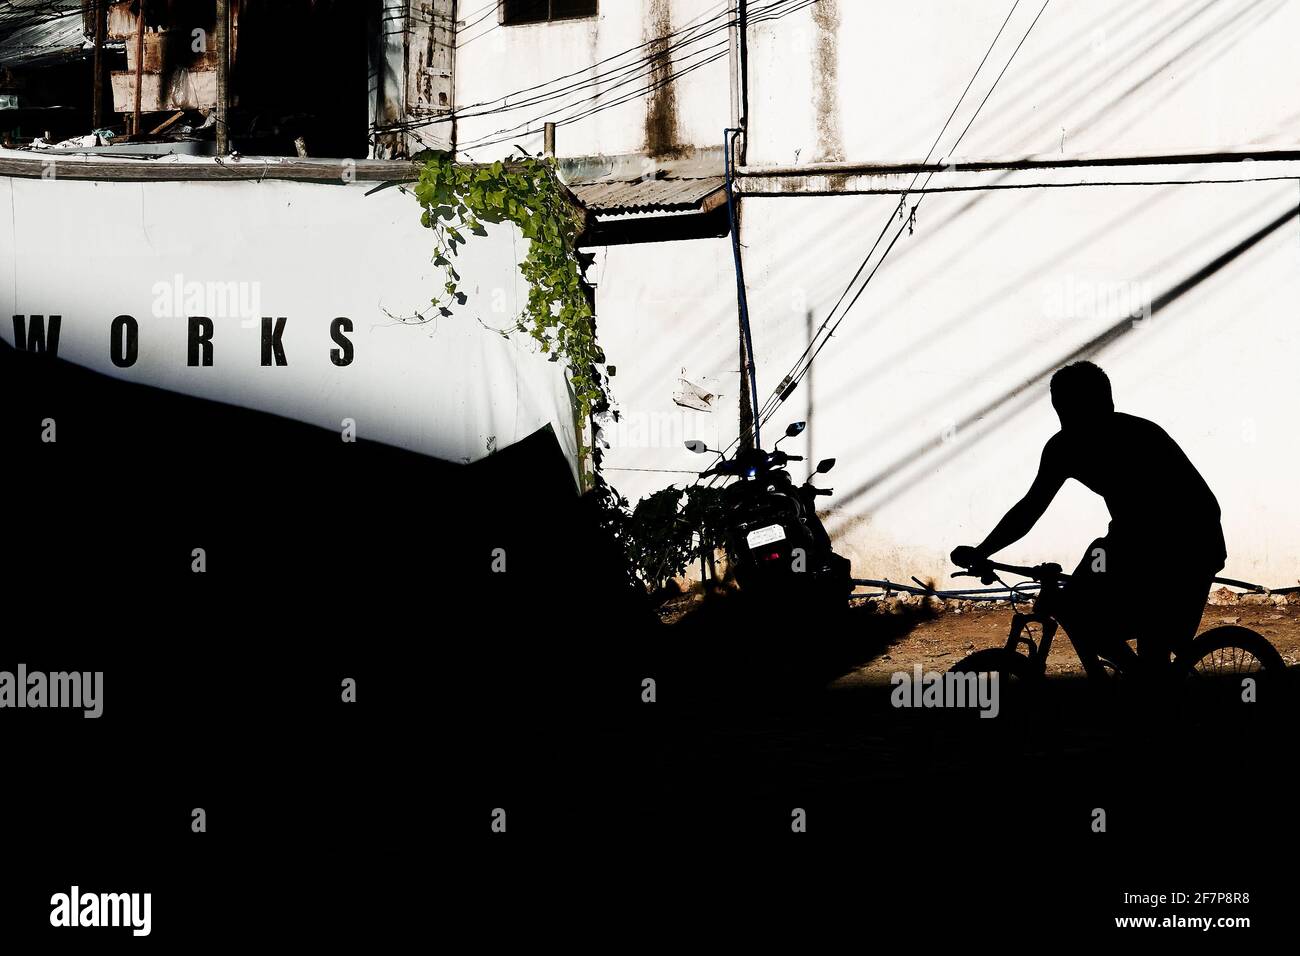 Ein junger Mann auf einem Mountainbike erscheint als Silhouette an einer sonnigen weißen Wand, auf der das Wort „Works“ steht: Boracay Island, Asien Stockfoto